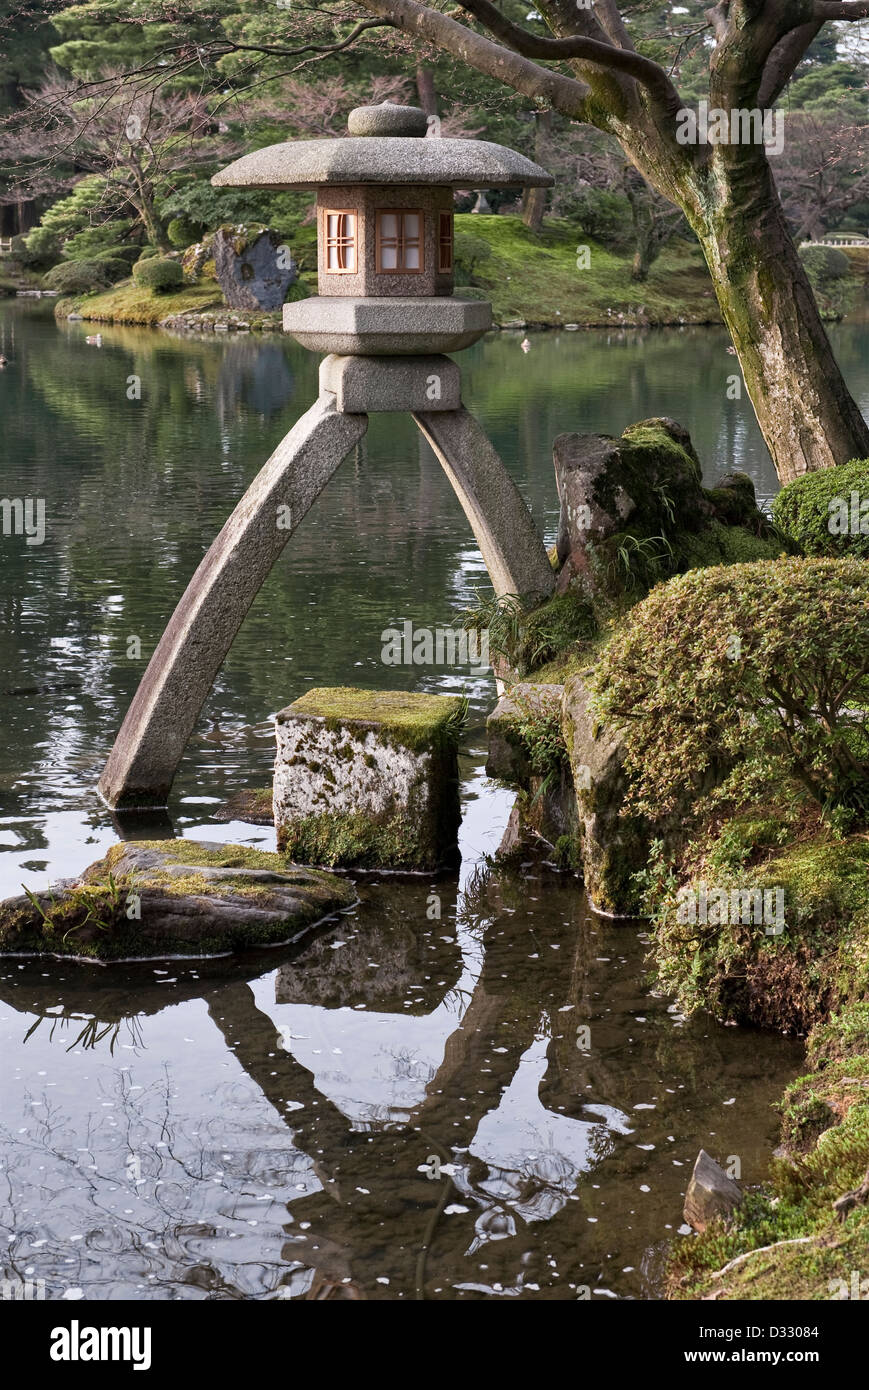 The stone lantern or tōrō known as Kotoji-toro, at the famous garden of  Kenroku-en, Kanazawa, Japan Stock Photo - Alamy